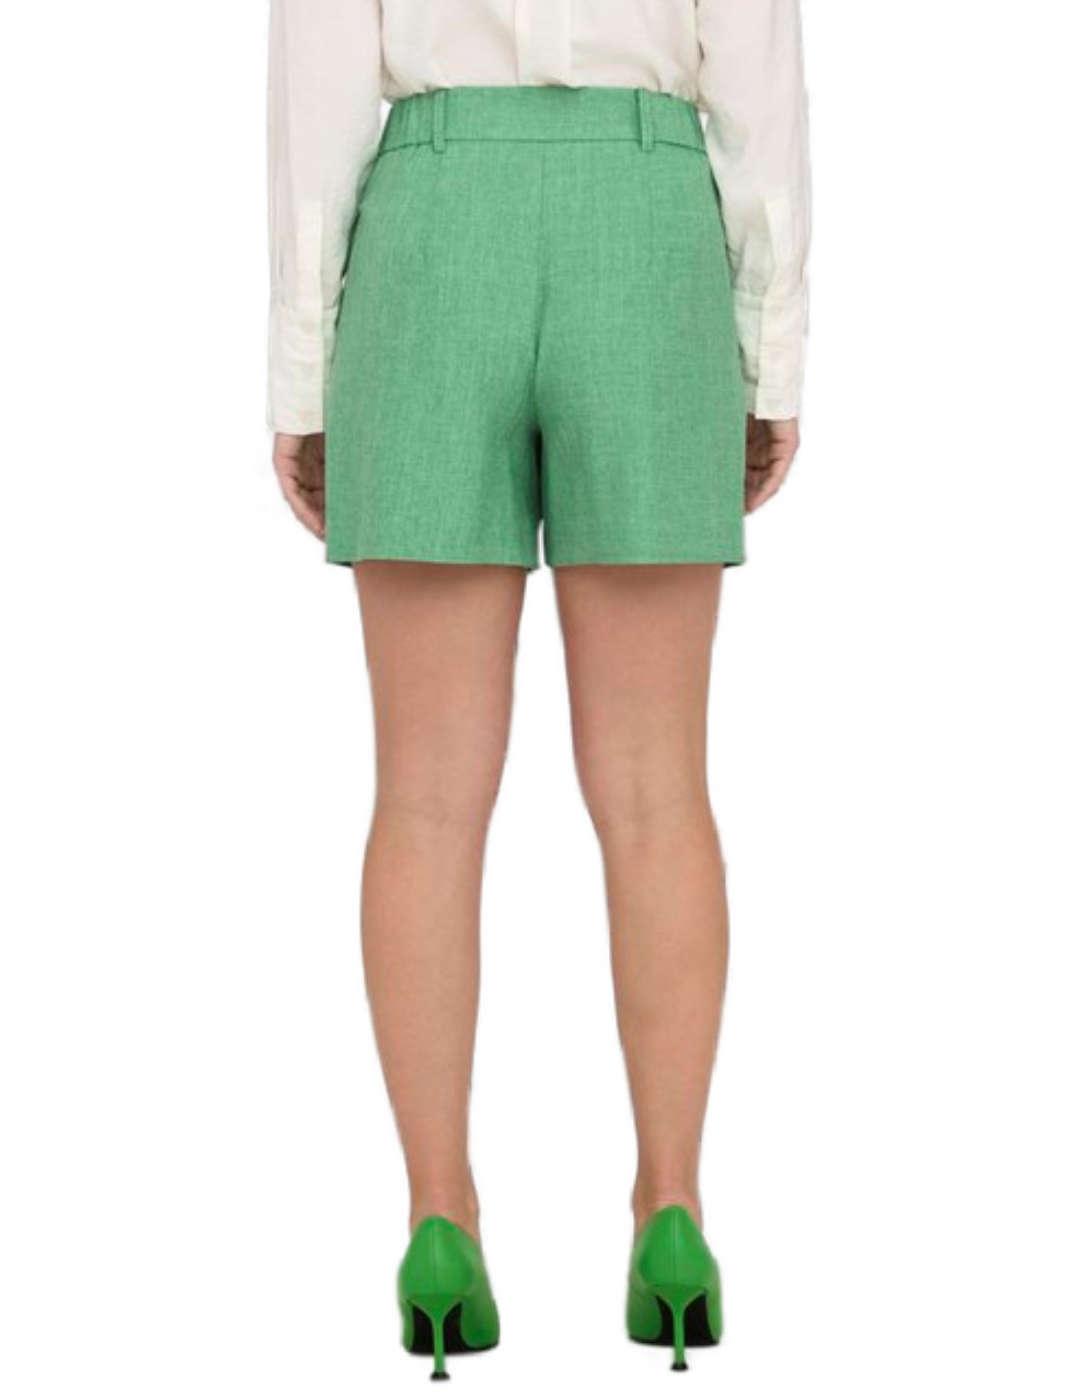 Shorts corto Only de pinzas color verde para mujer